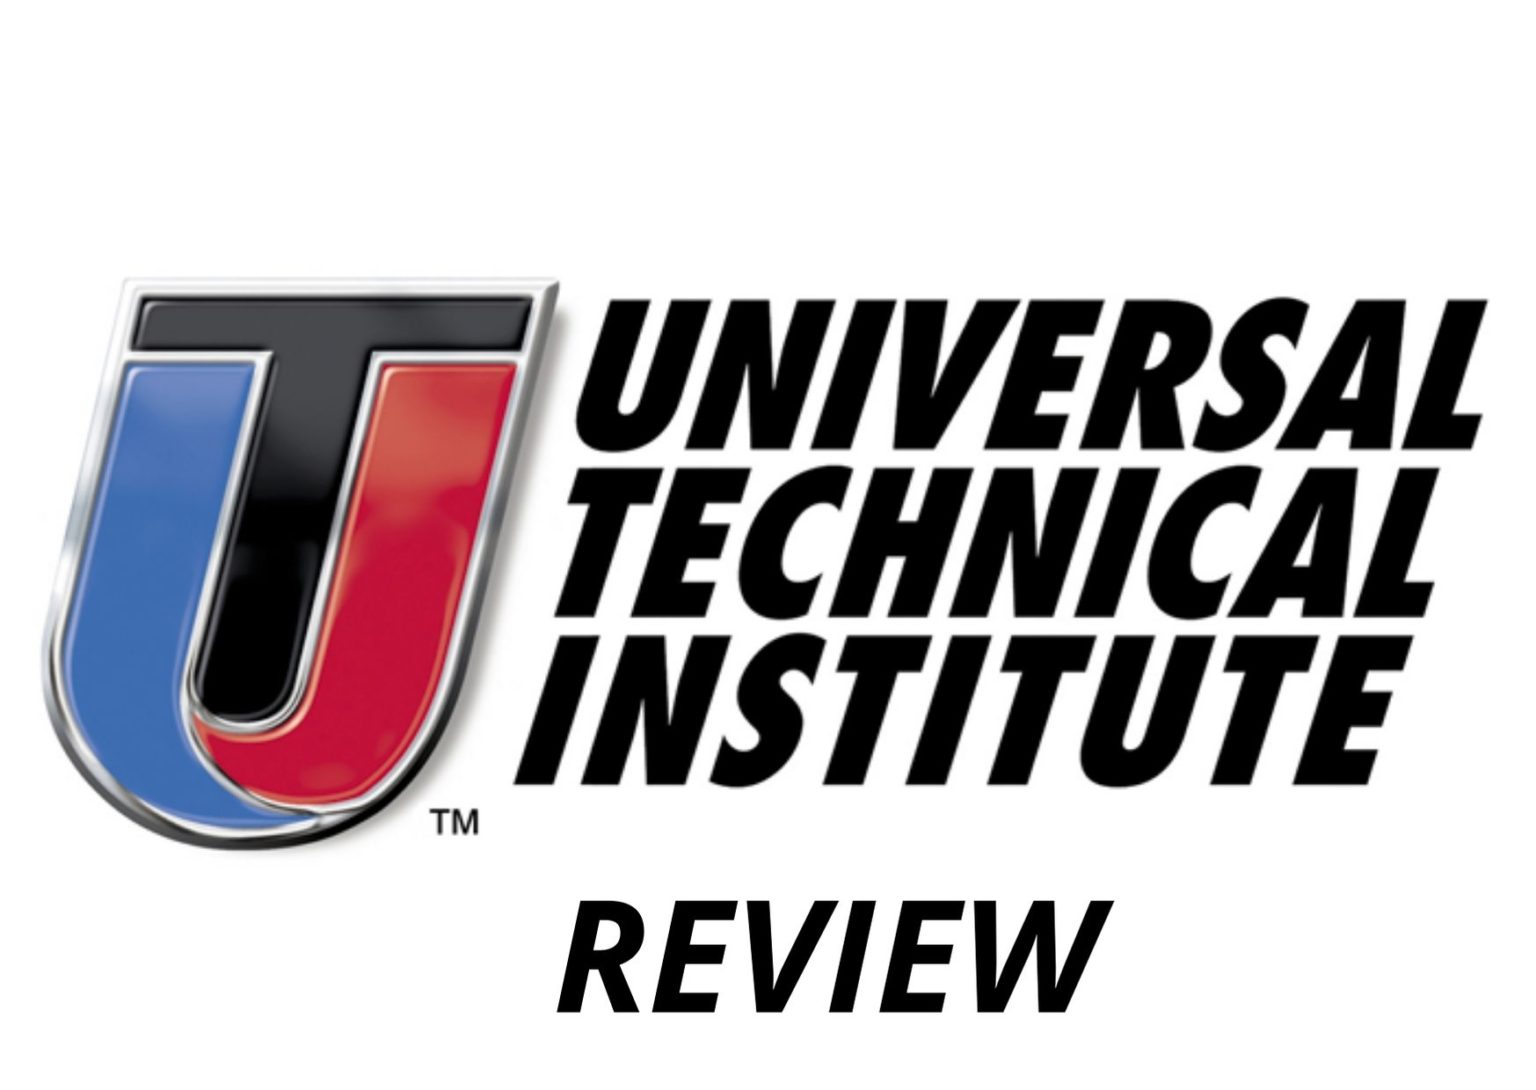 uti-school-review-2021-er-universal-technical-institute-l-gm-tt-e-a-svindl-x-styrkur